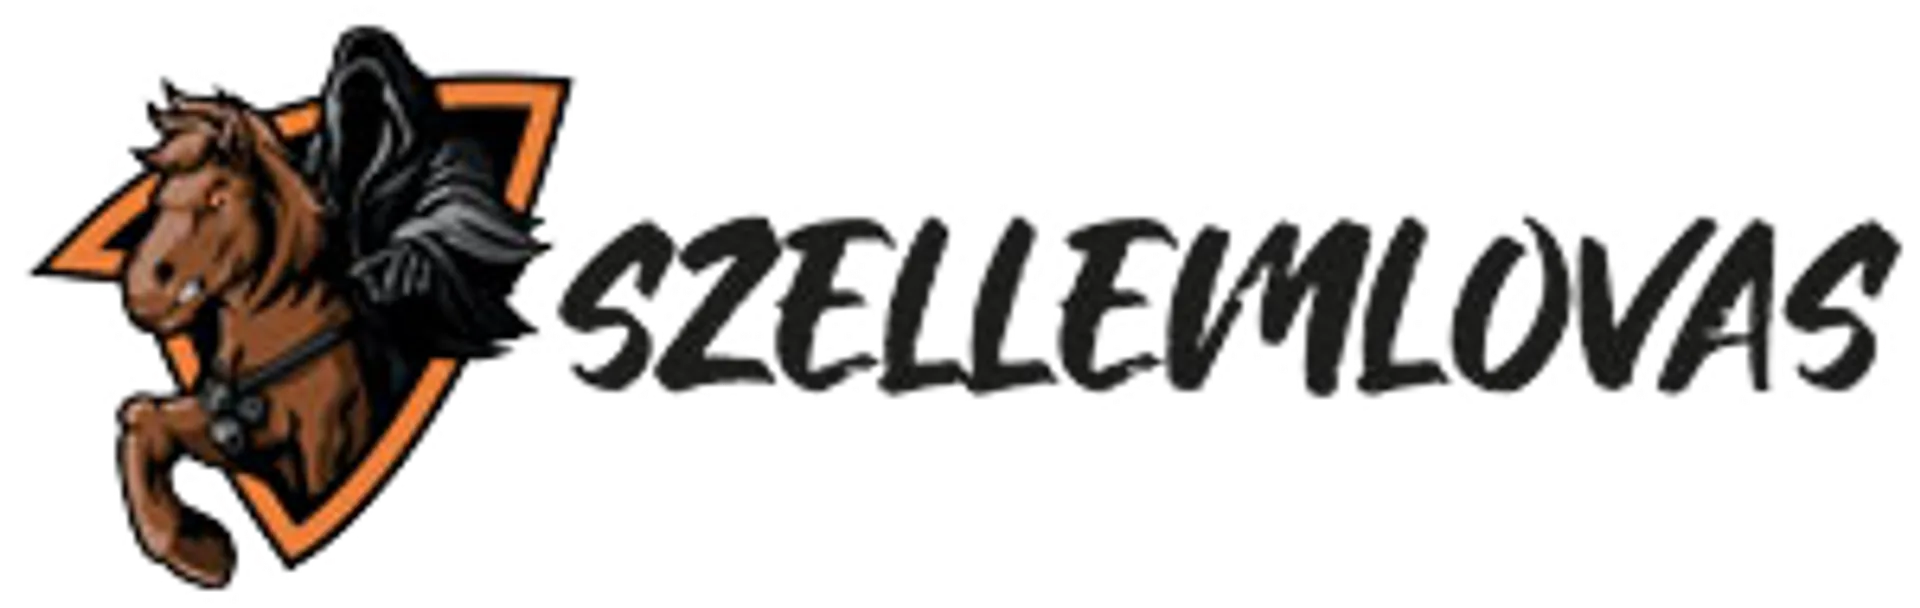 SZELLEMLOVAS logo